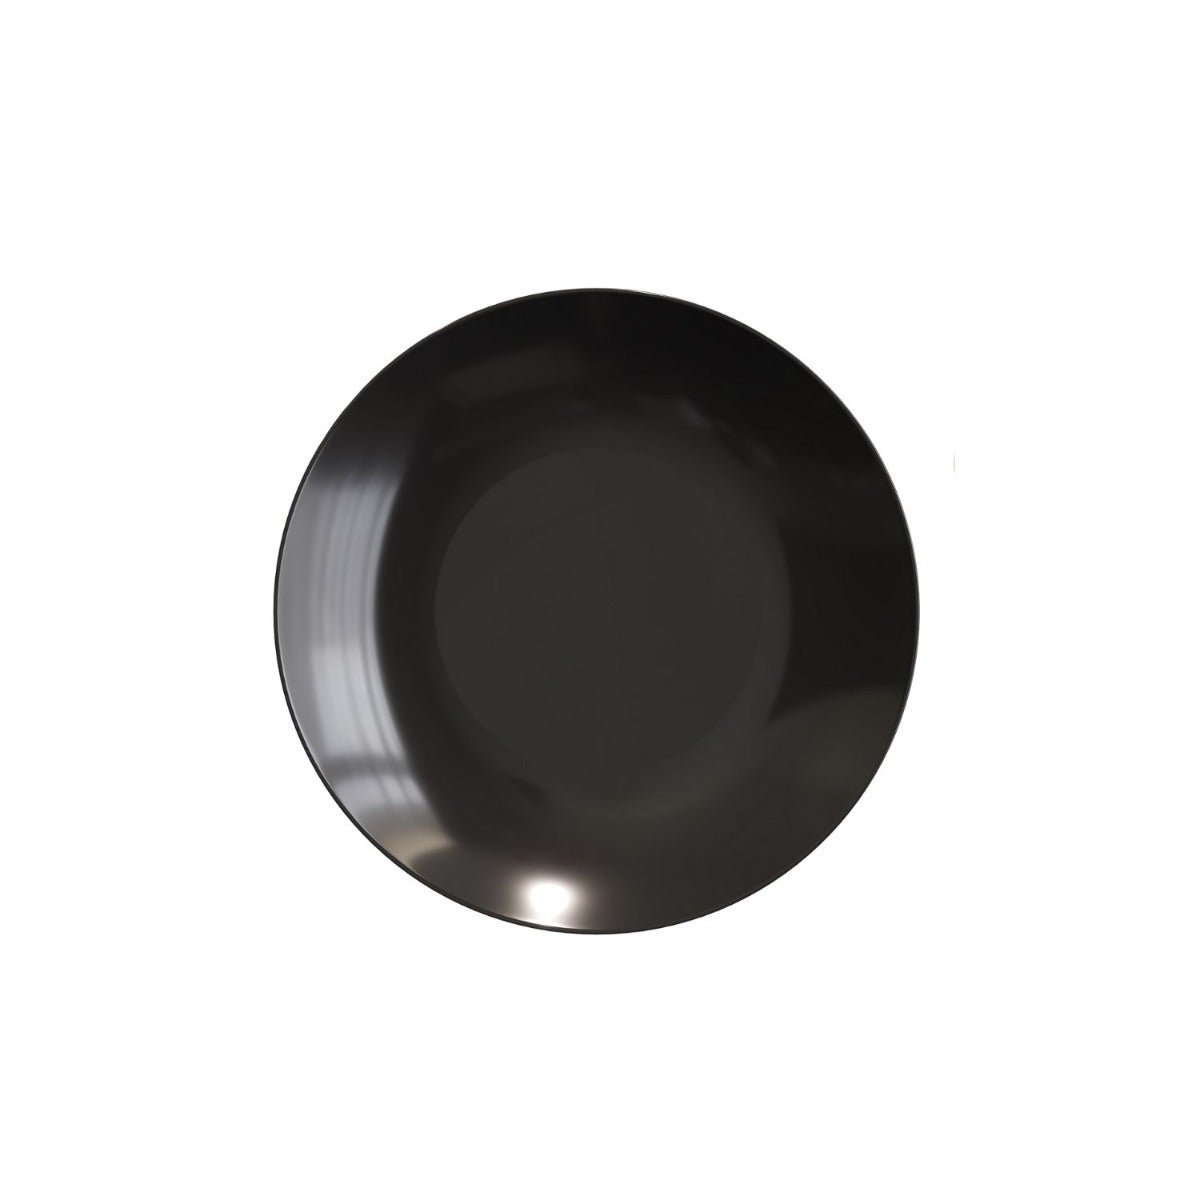 6" Classic Black Design Plastic Plates (120 Count)